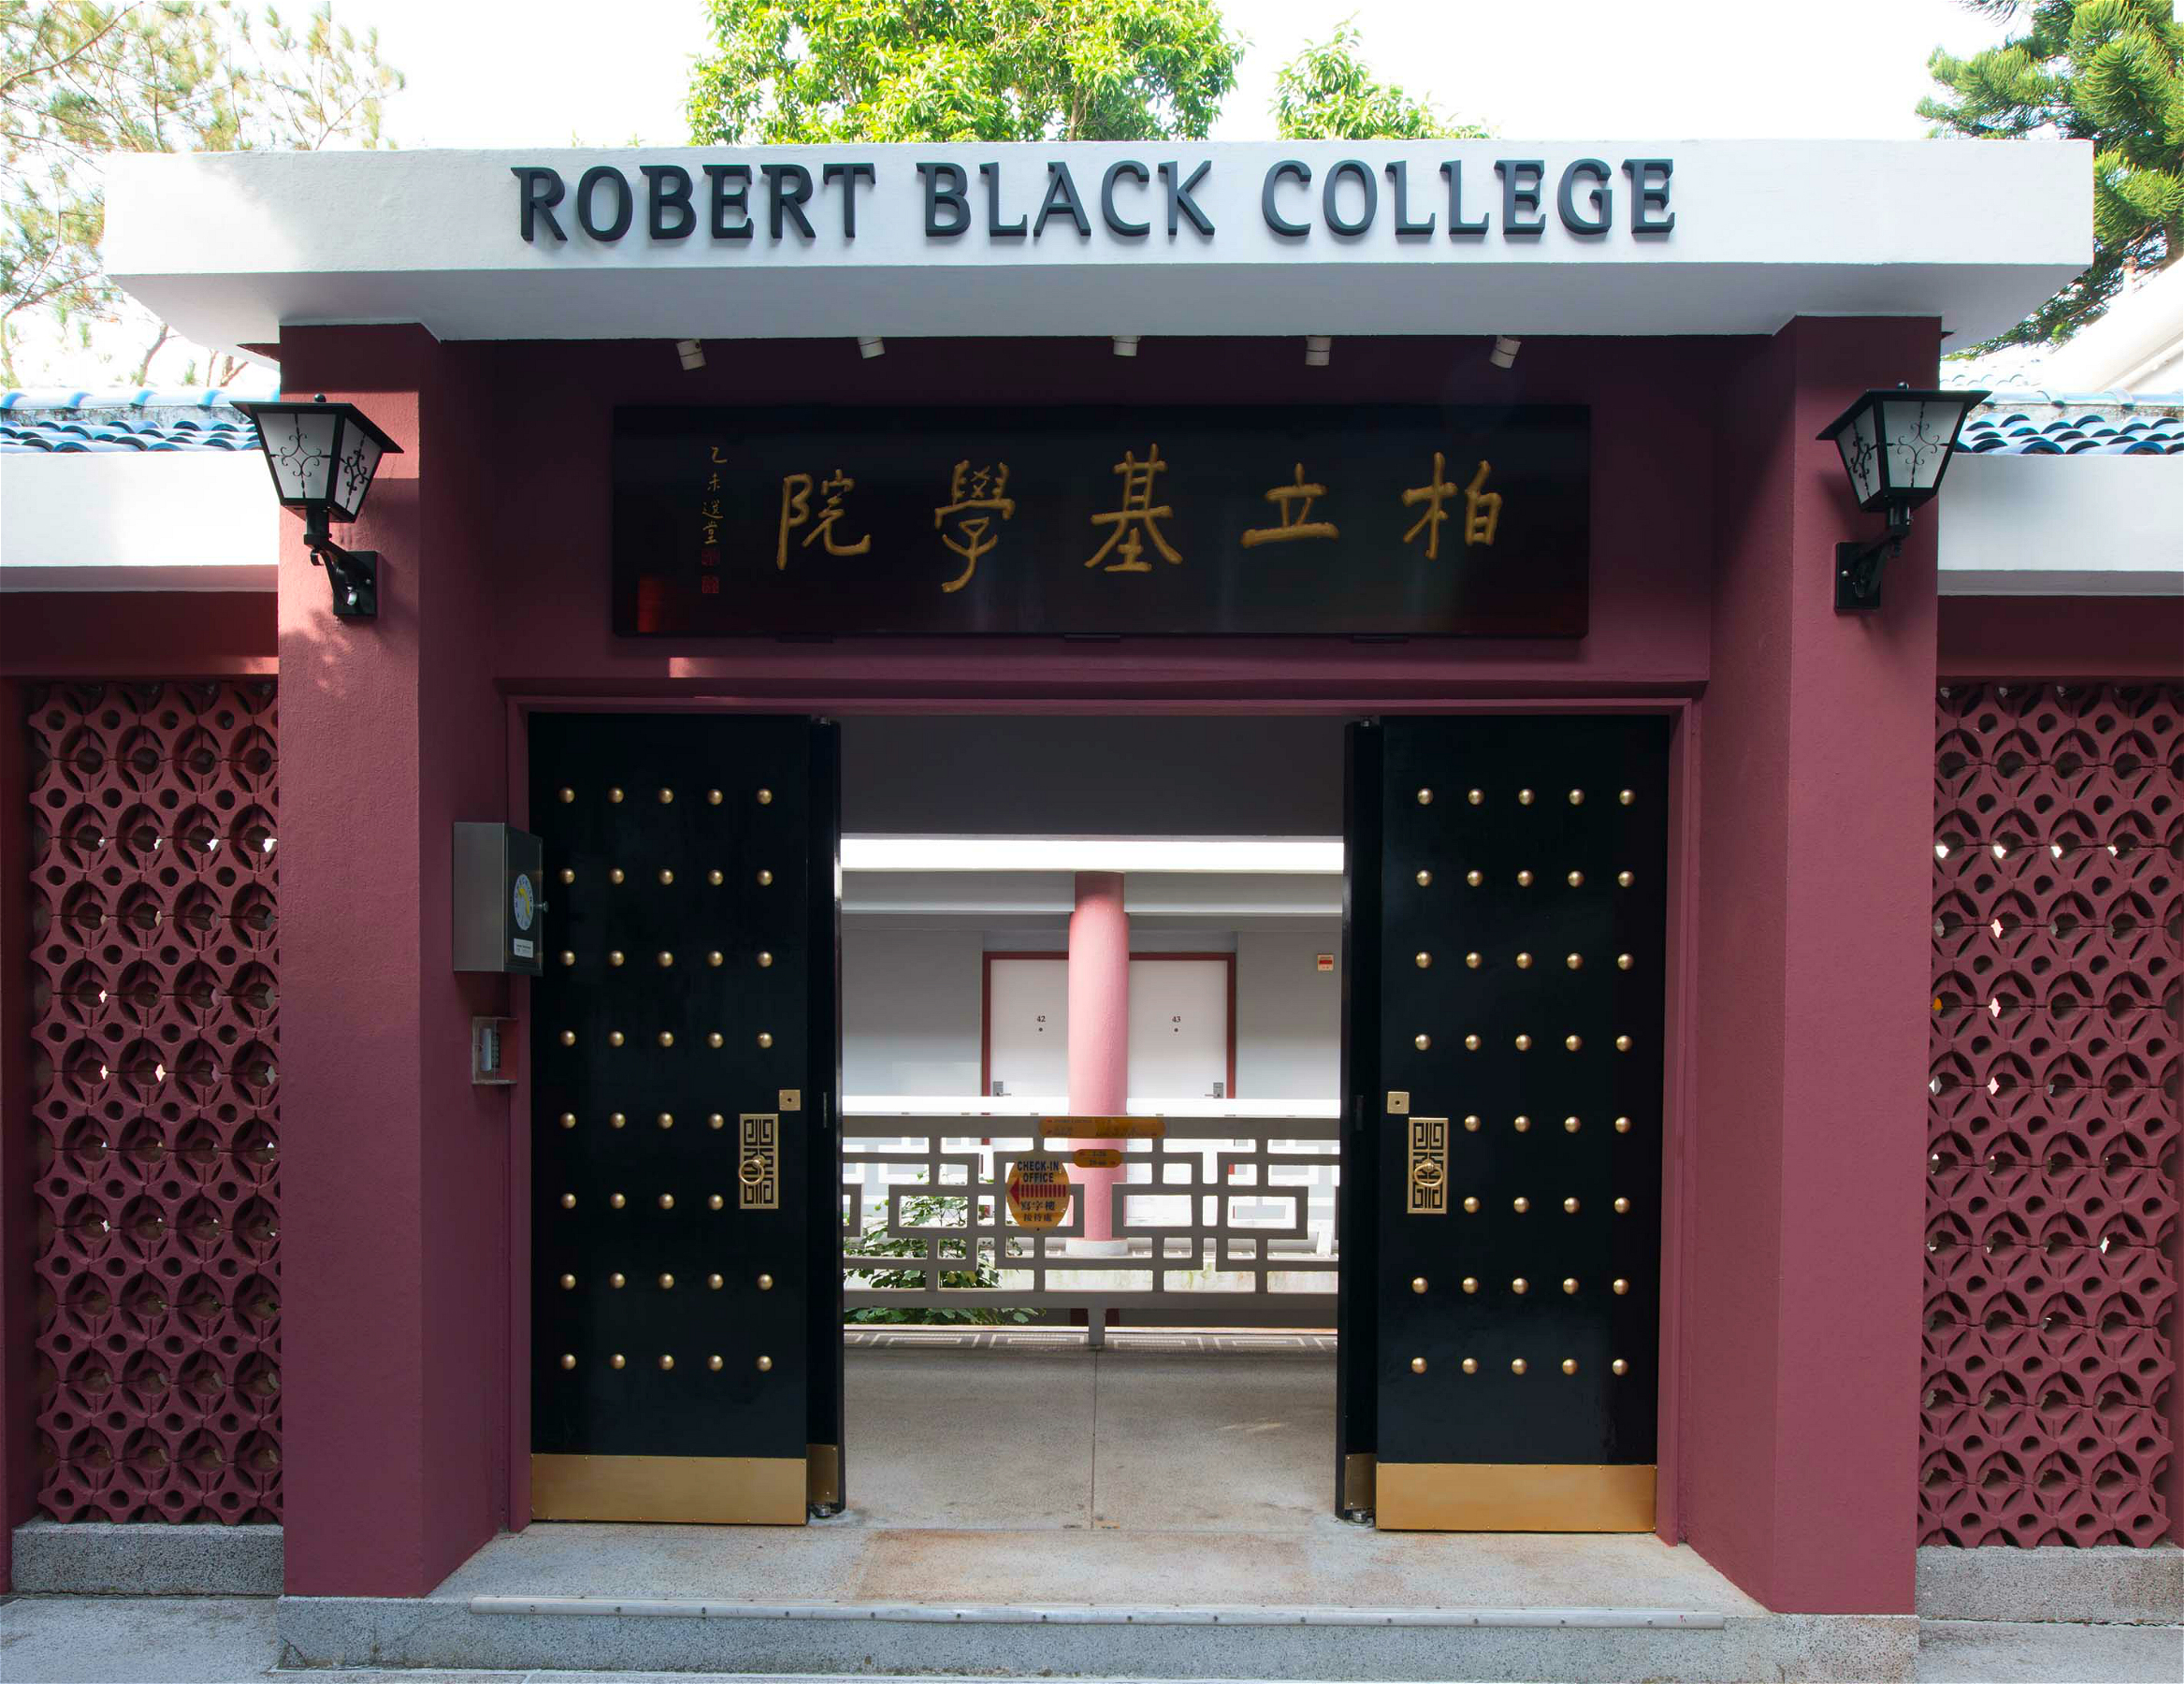 Robert Black College